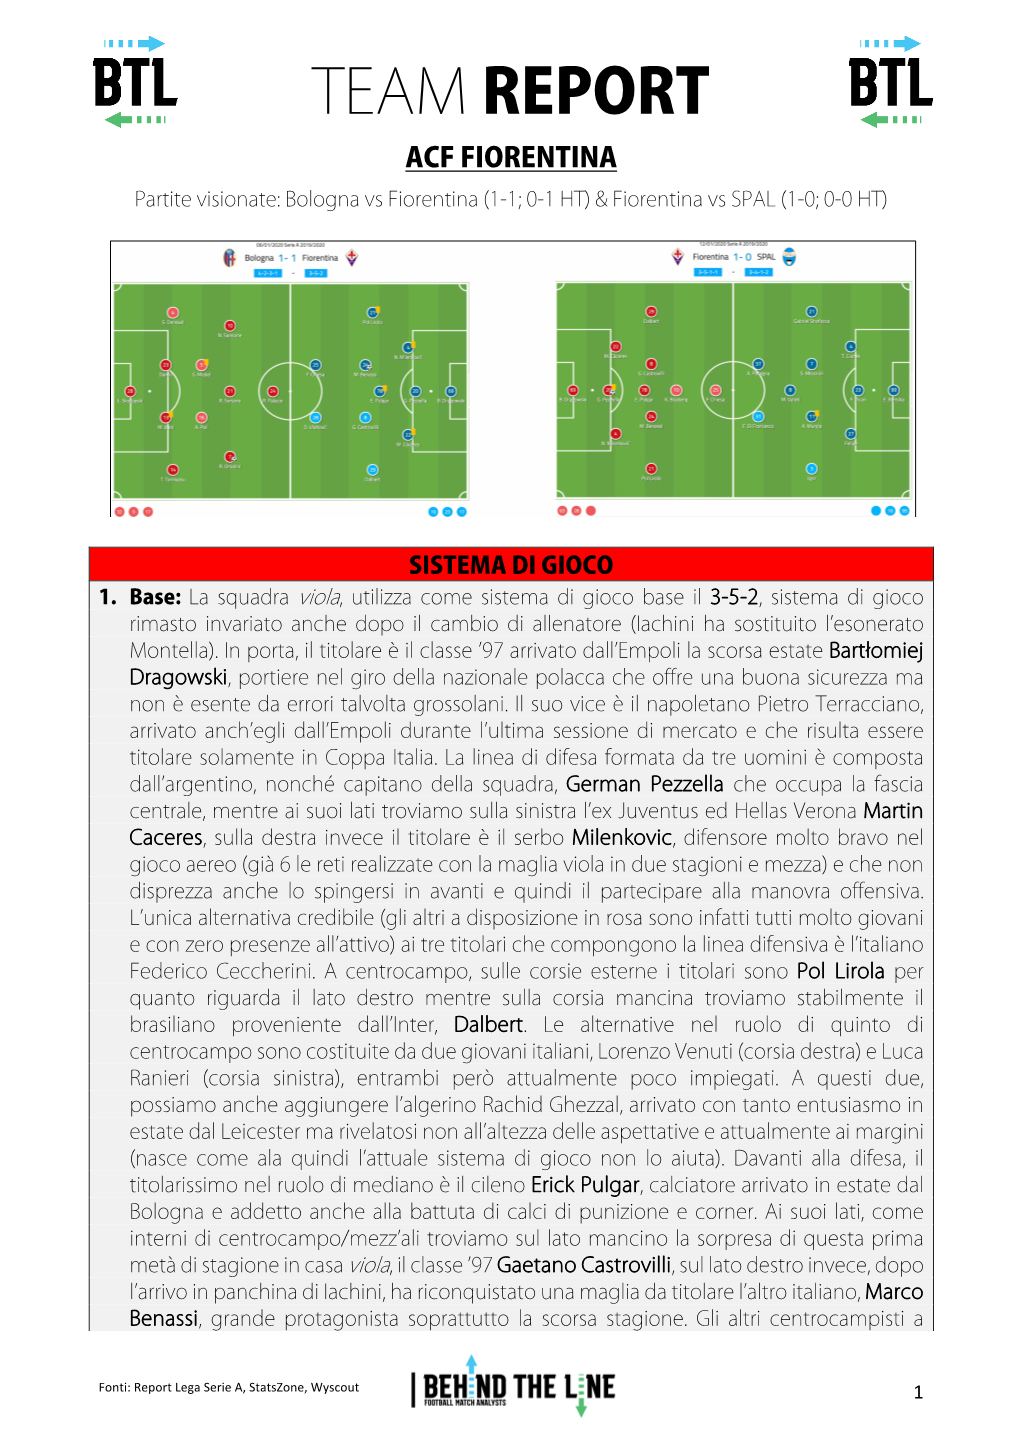 TEAM REPORT ACF FIORENTINA Partite Visionate: Bologna Vs Fiorentina (1-1; 0-1 HT) & Fiorentina Vs SPAL (1-0; 0-0 HT)